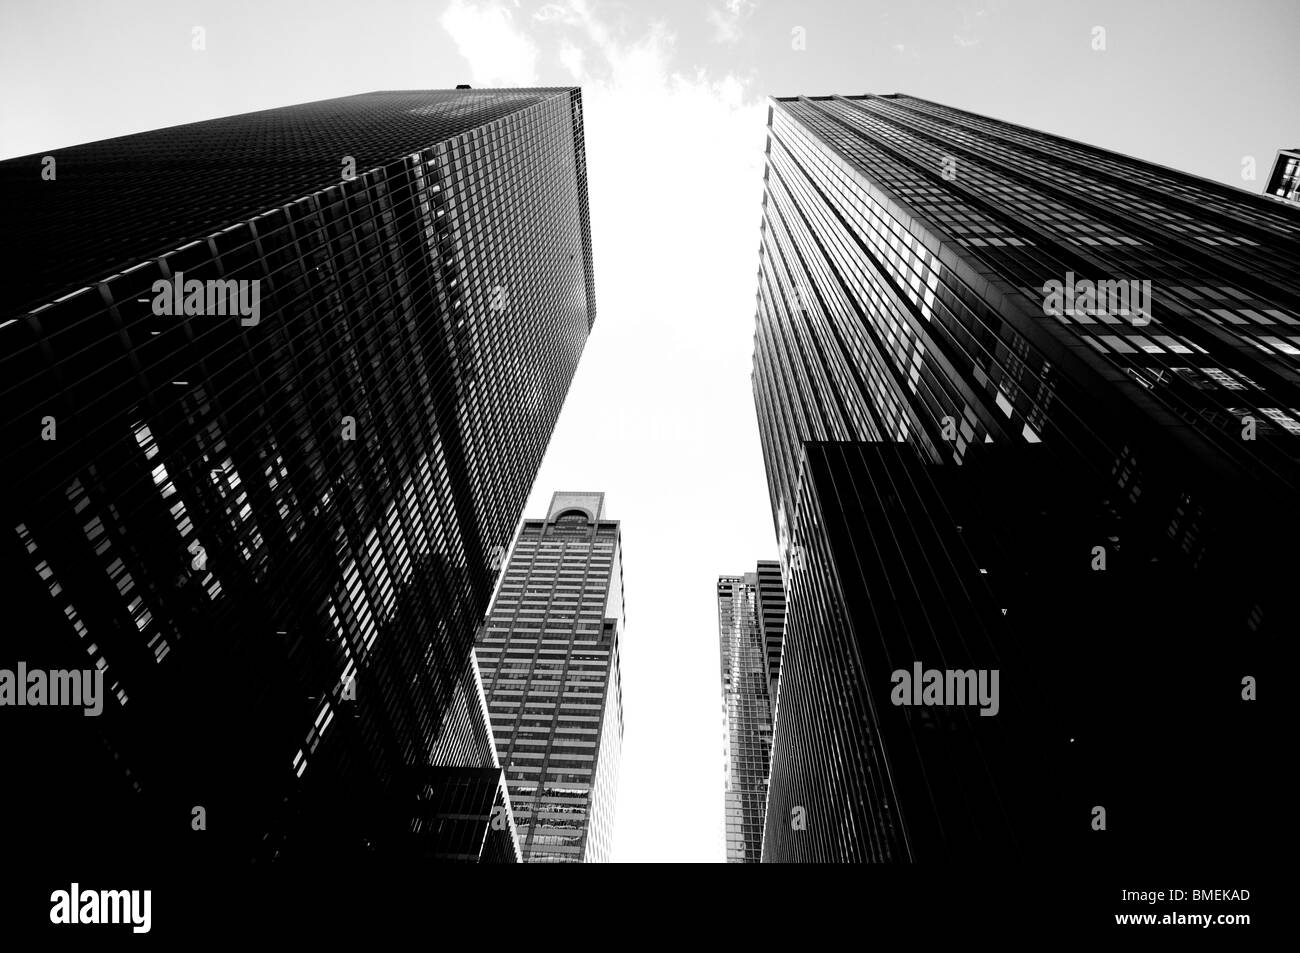 Alti grattacieli di New York City, NY, STATI UNITI D'AMERICA. Foto Stock